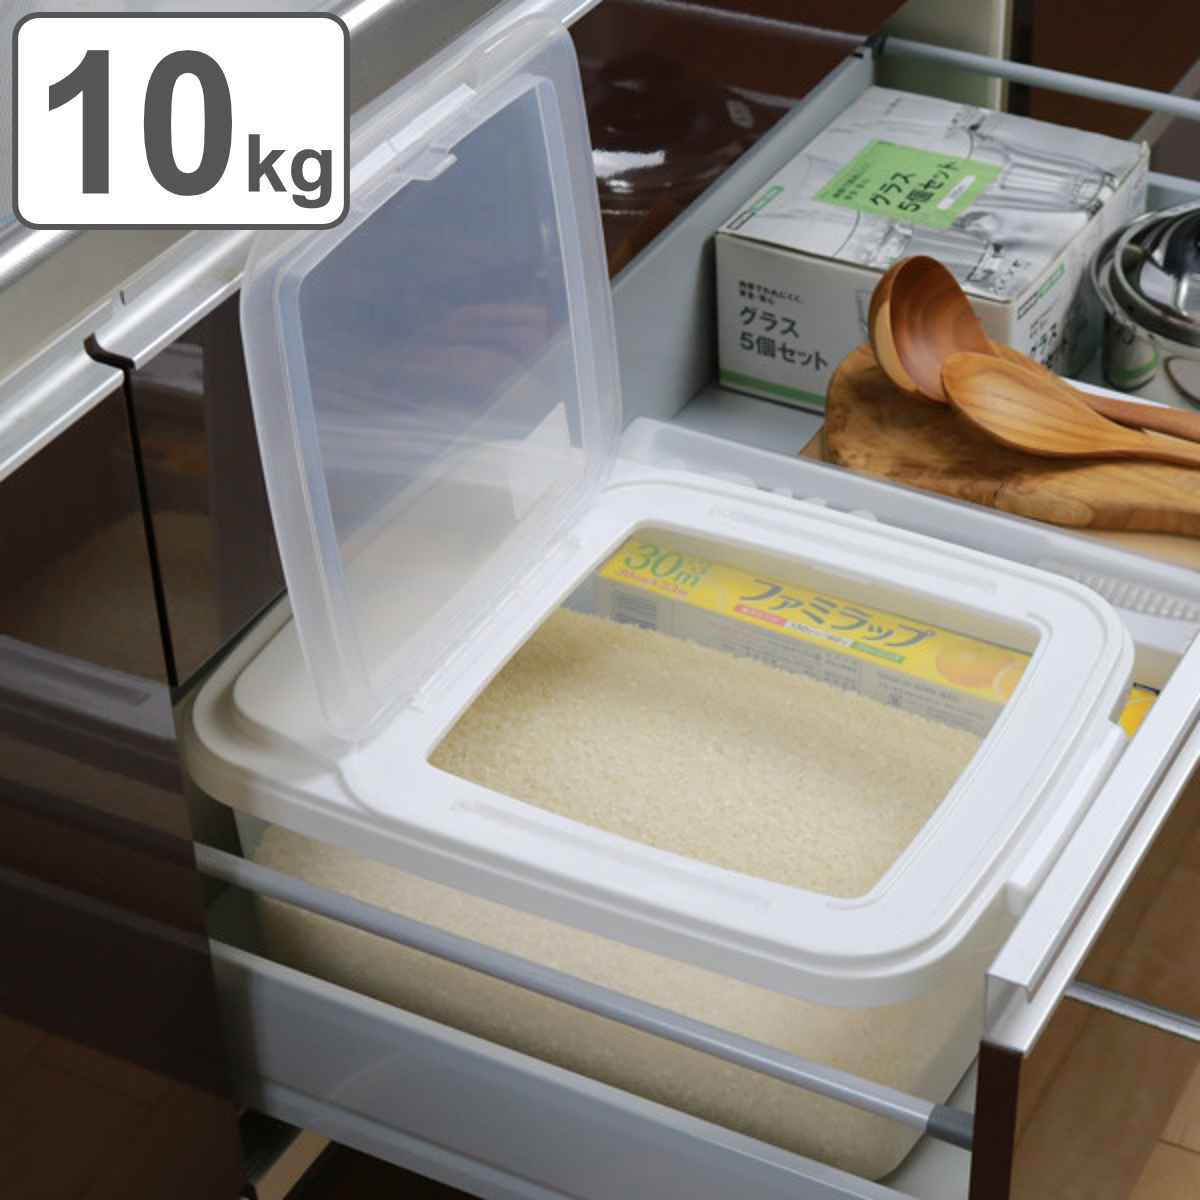 米びつ 10kg用 システムキッチン用 引き出し米びつ